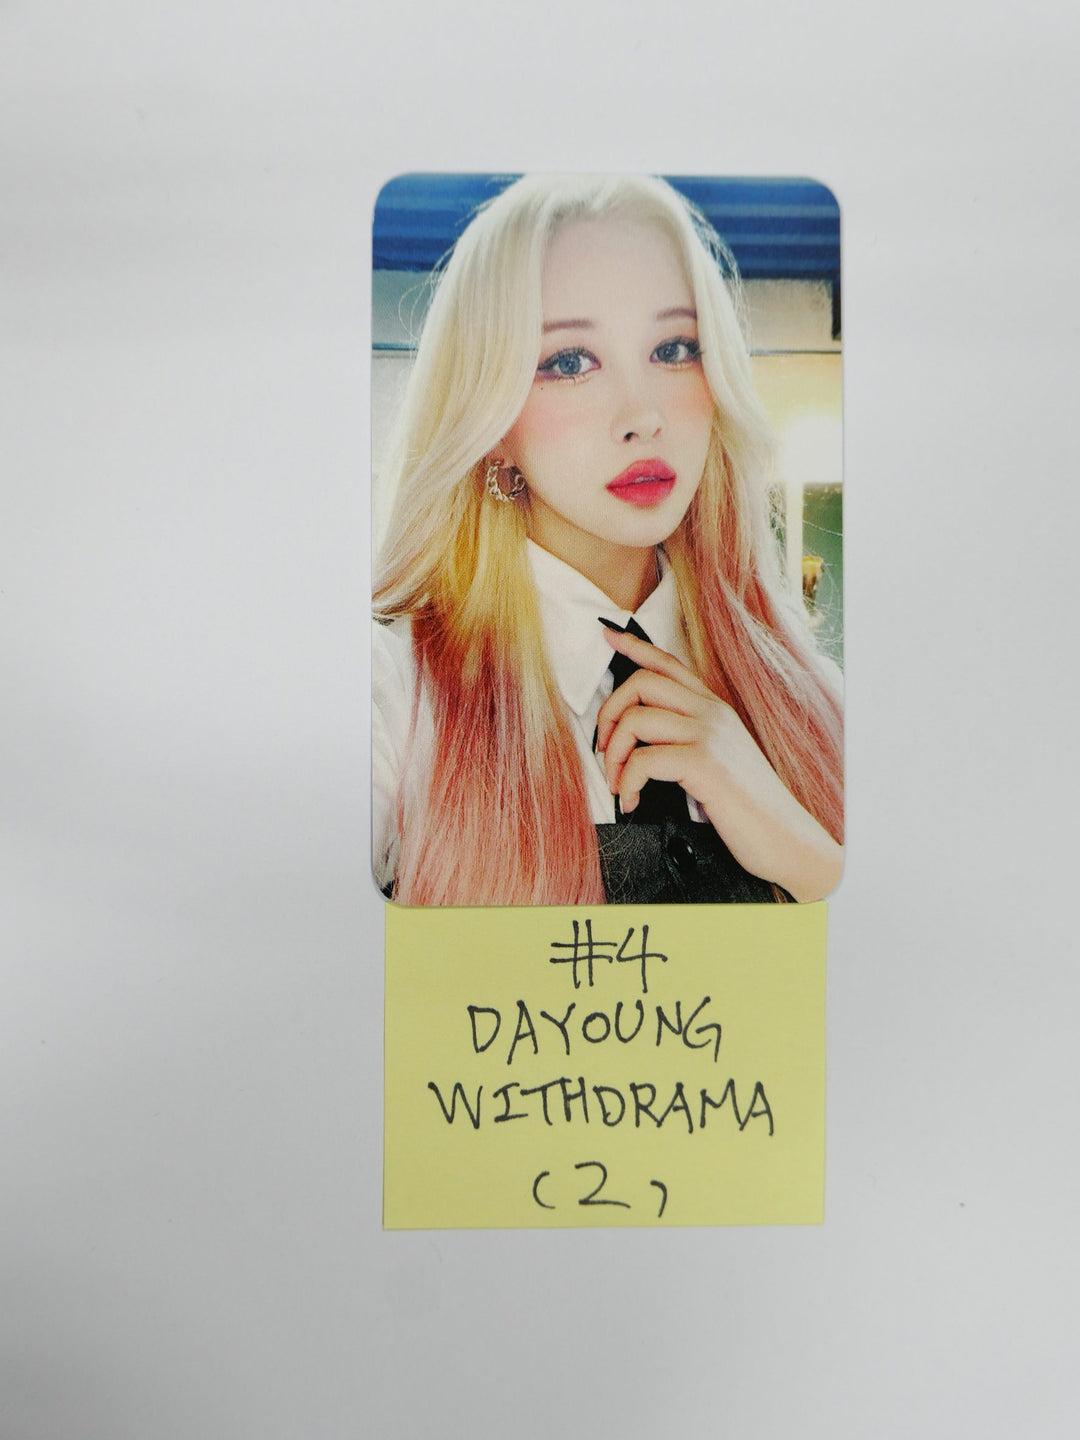 우주소녀 쵸컴 "슈퍼여퍼!" 2nd Single - Withdrama 팬사인회 이벤트 포토카드